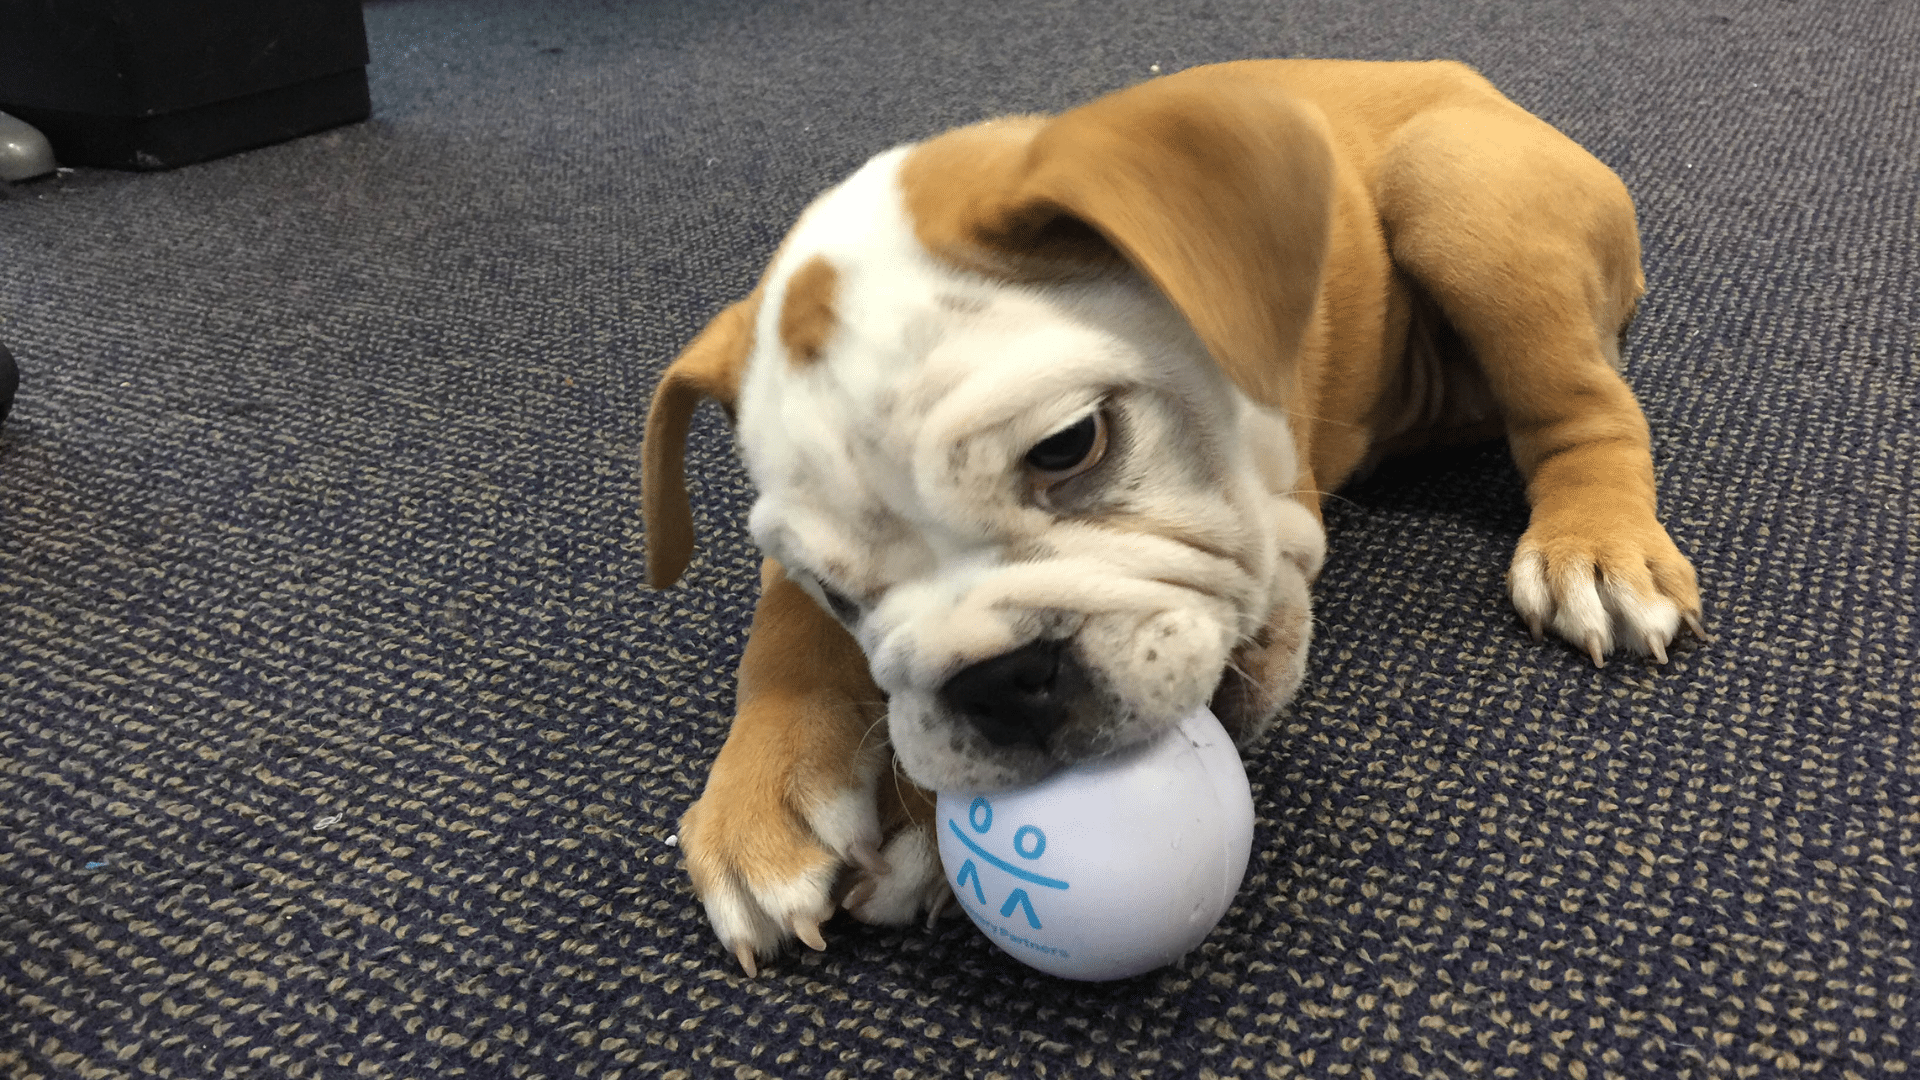 RP bulldog chews RP ball